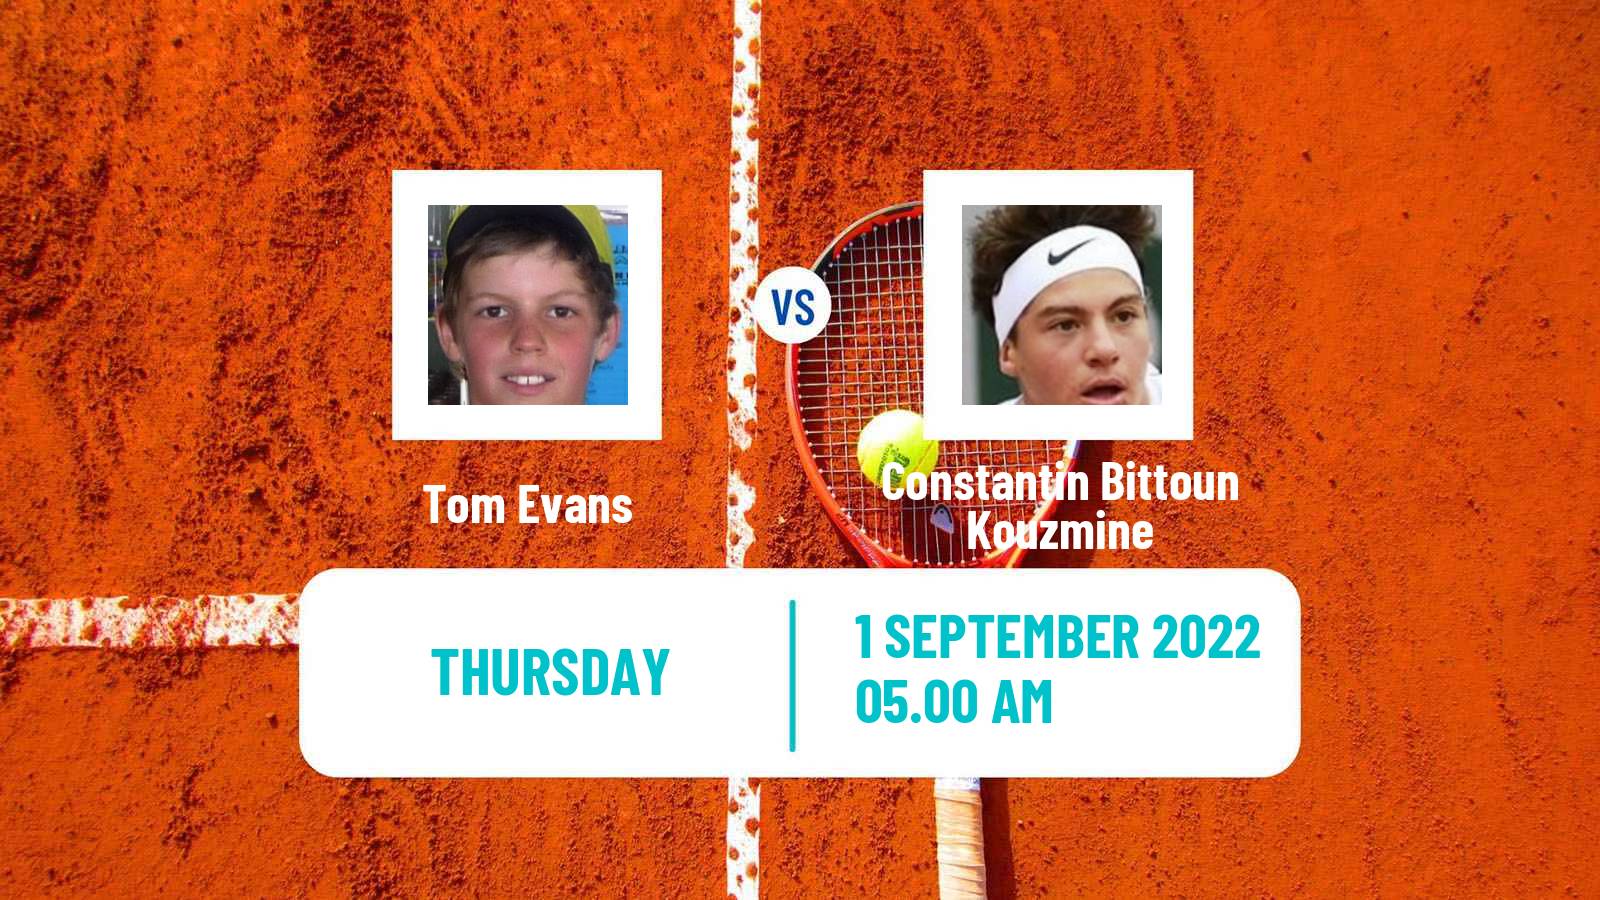 Tennis ITF Tournaments Tom Evans - Constantin Bittoun Kouzmine